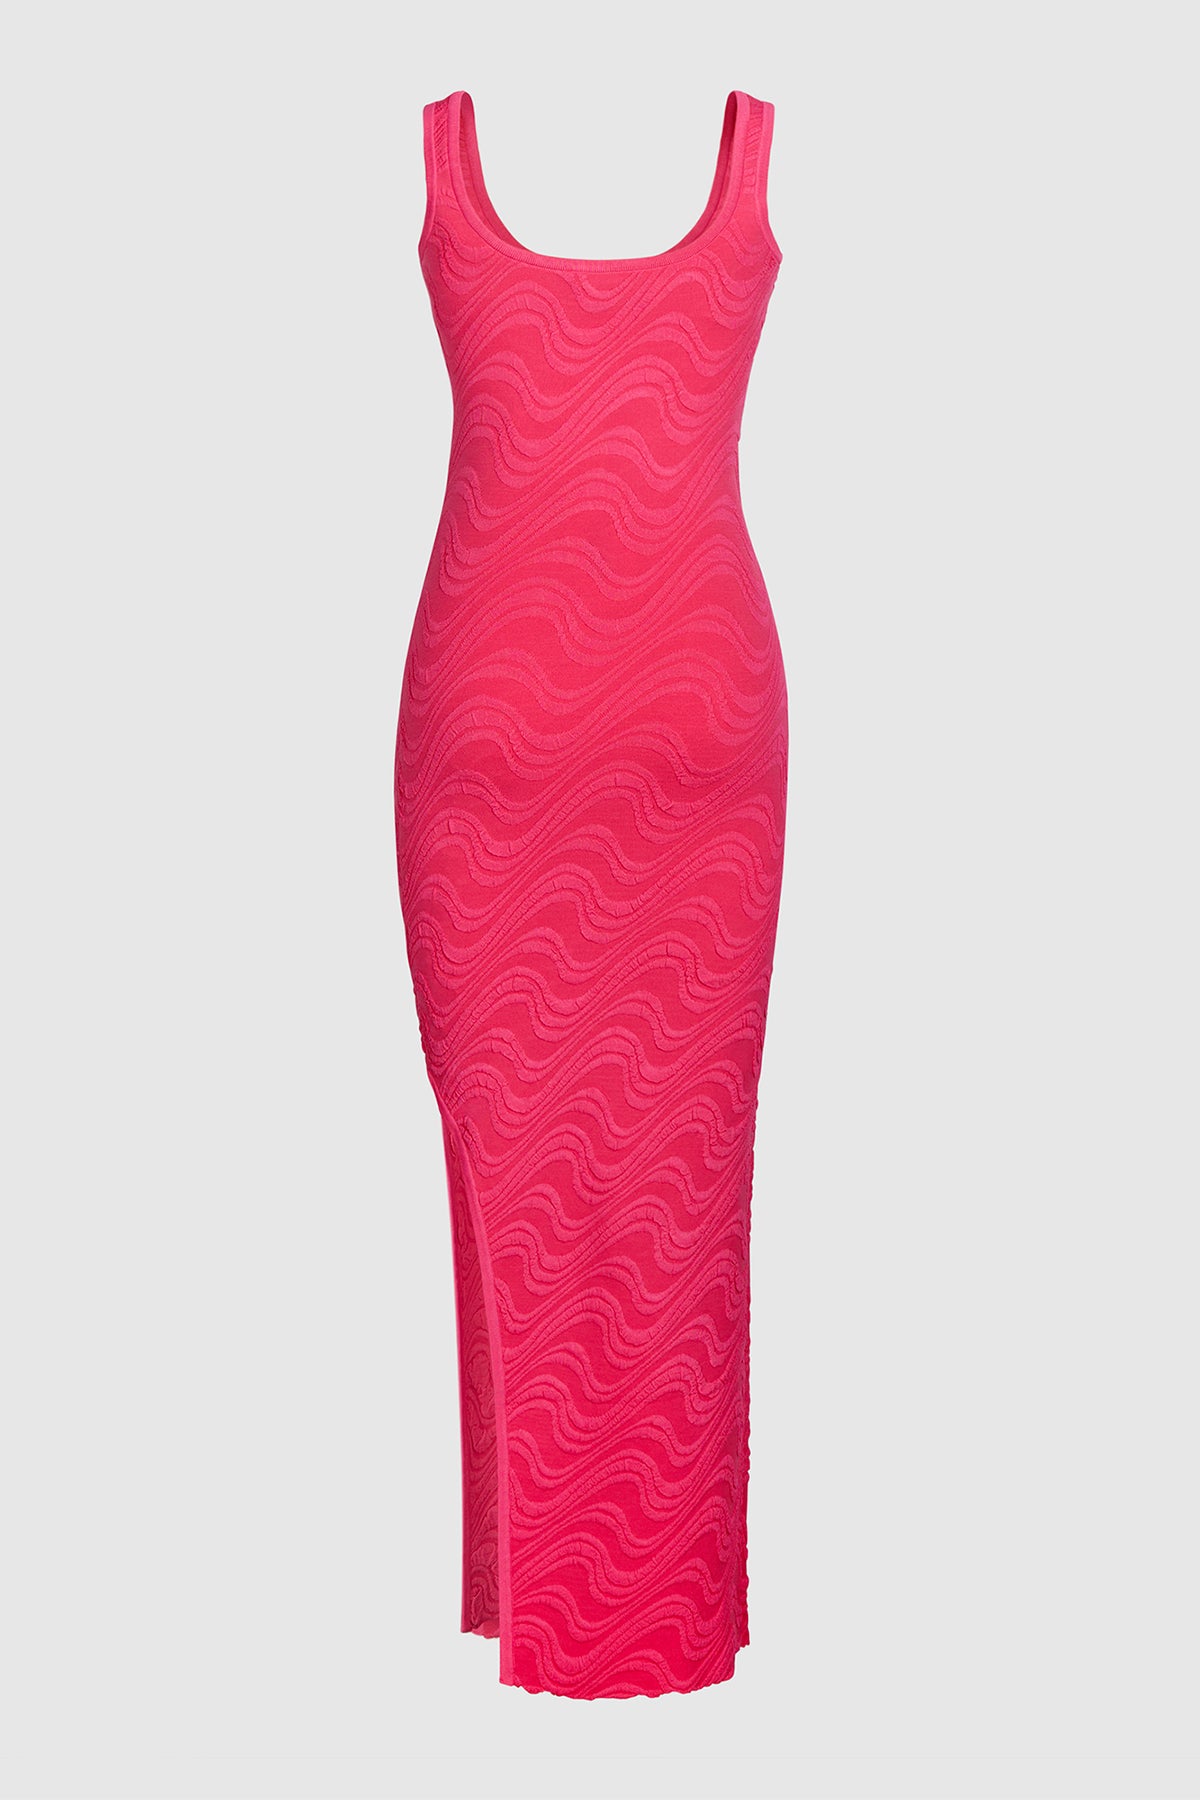 Wailele Wave Knit Dress - Flamingo